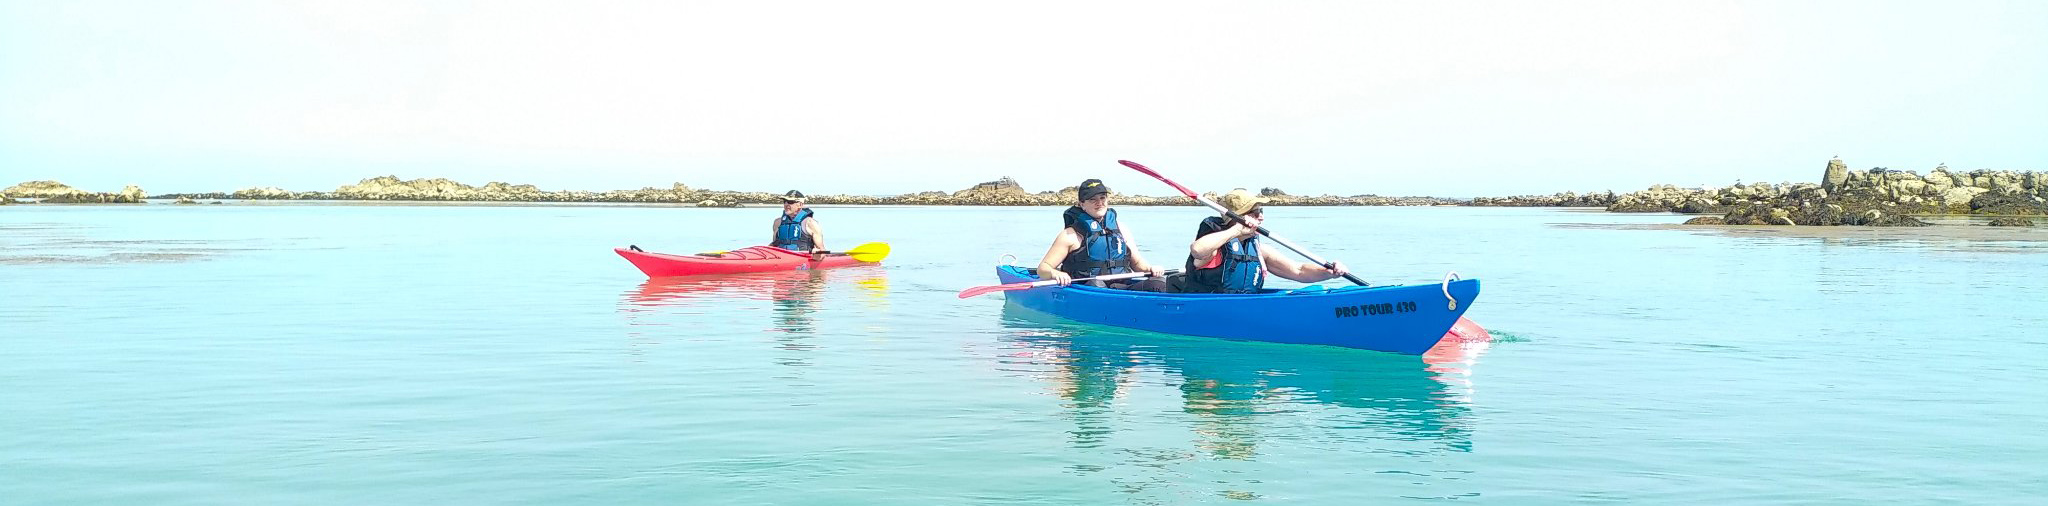 Balades en kayak touristique Côtes d'armor